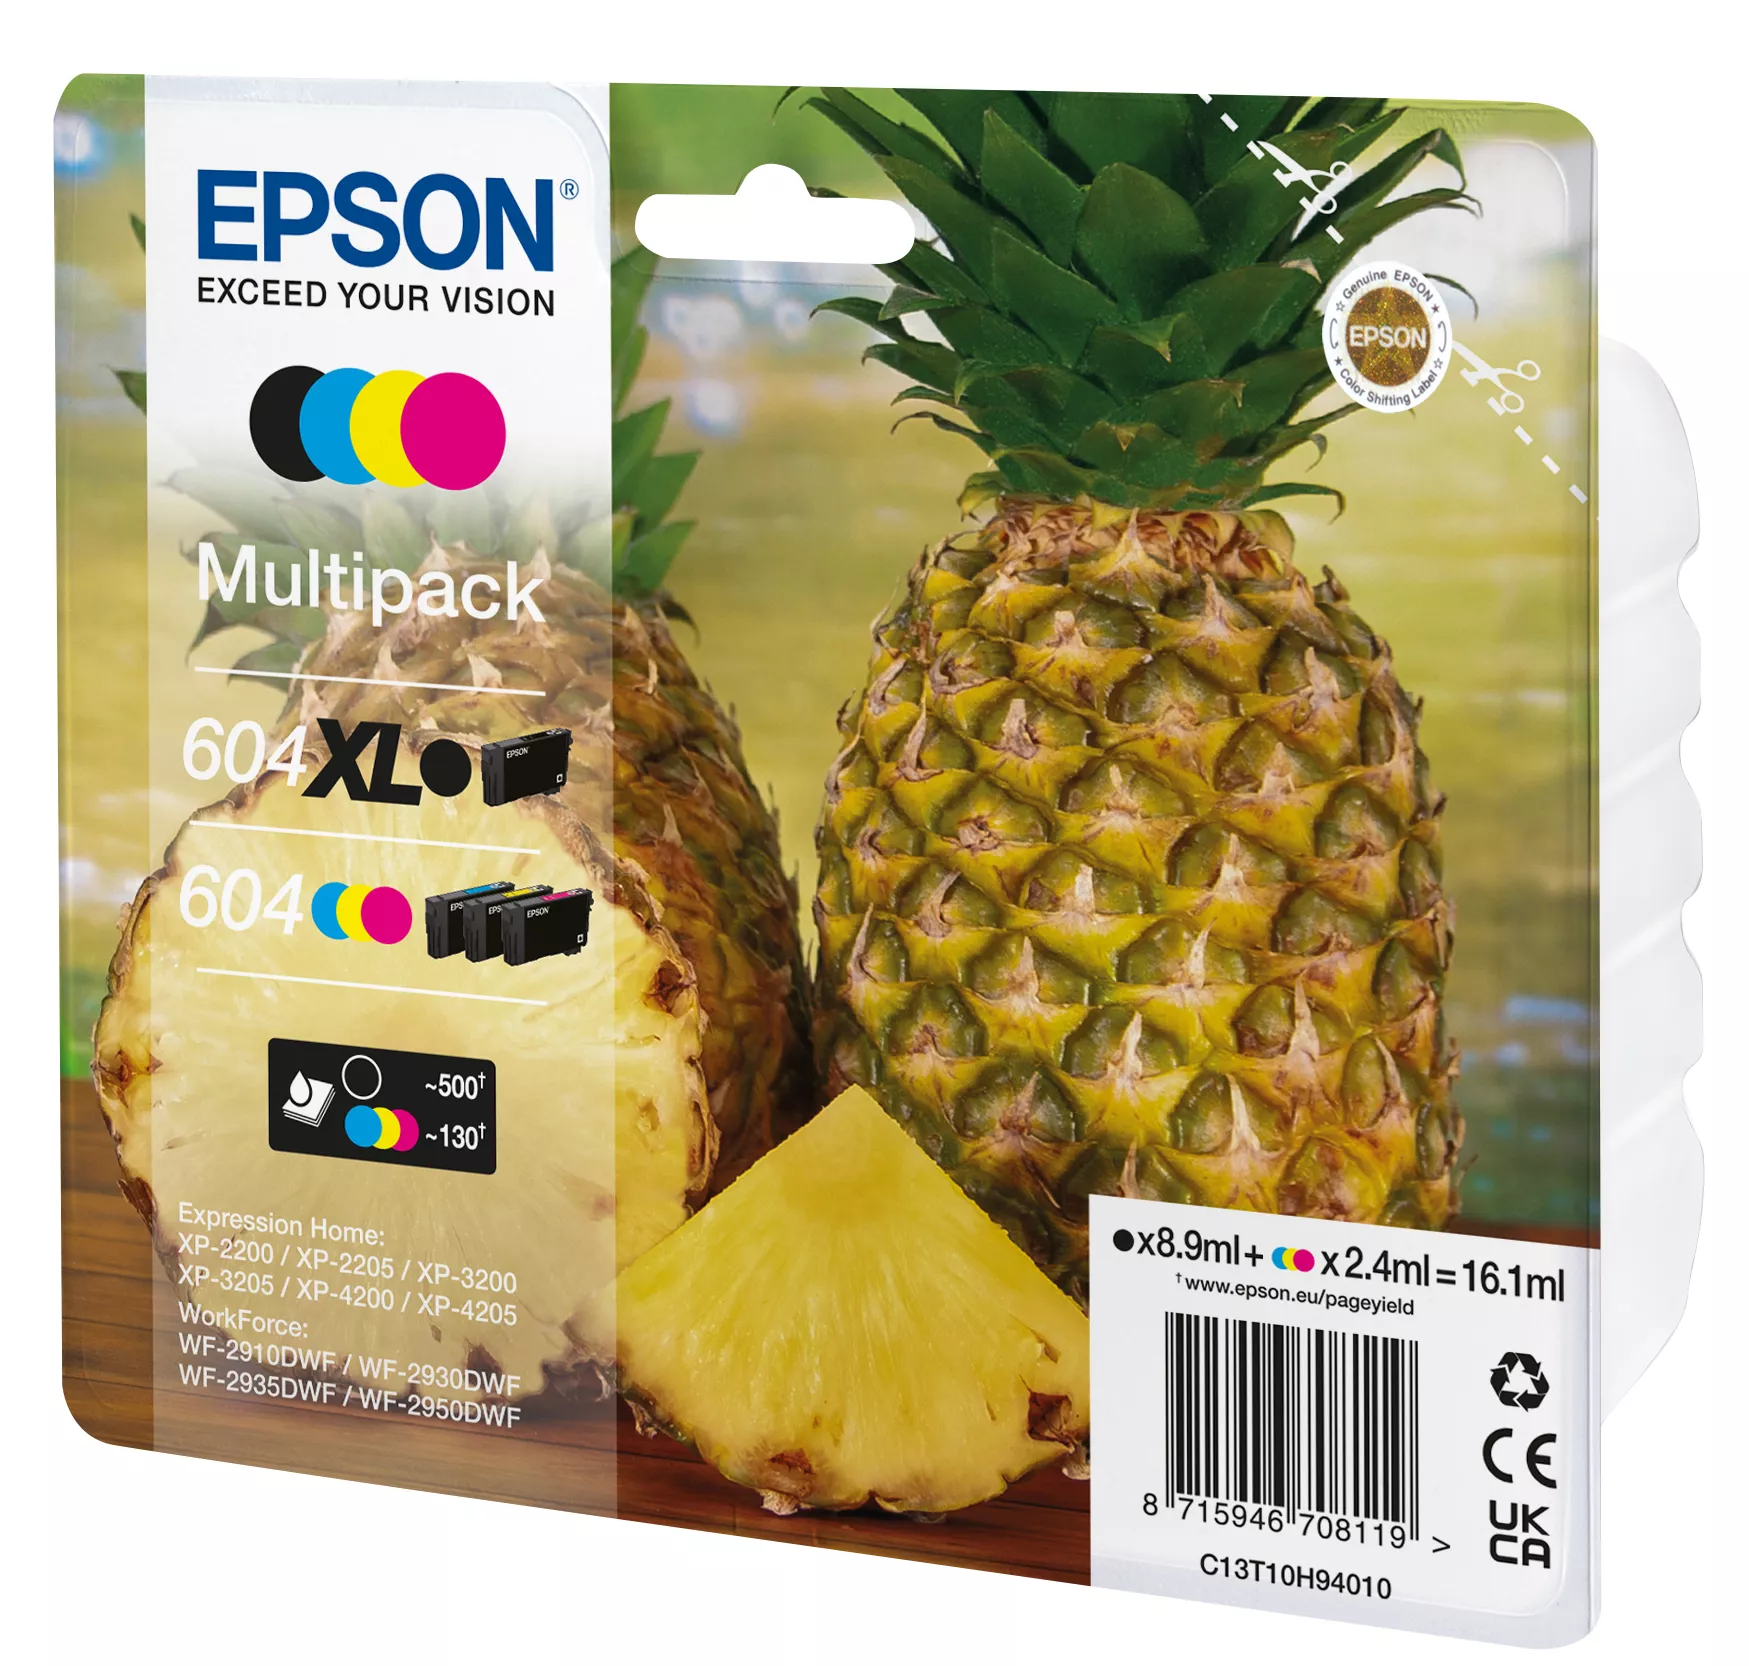 Revendeur officiel EPSON Multipack 4colours 604 XL Black/Std. CMY